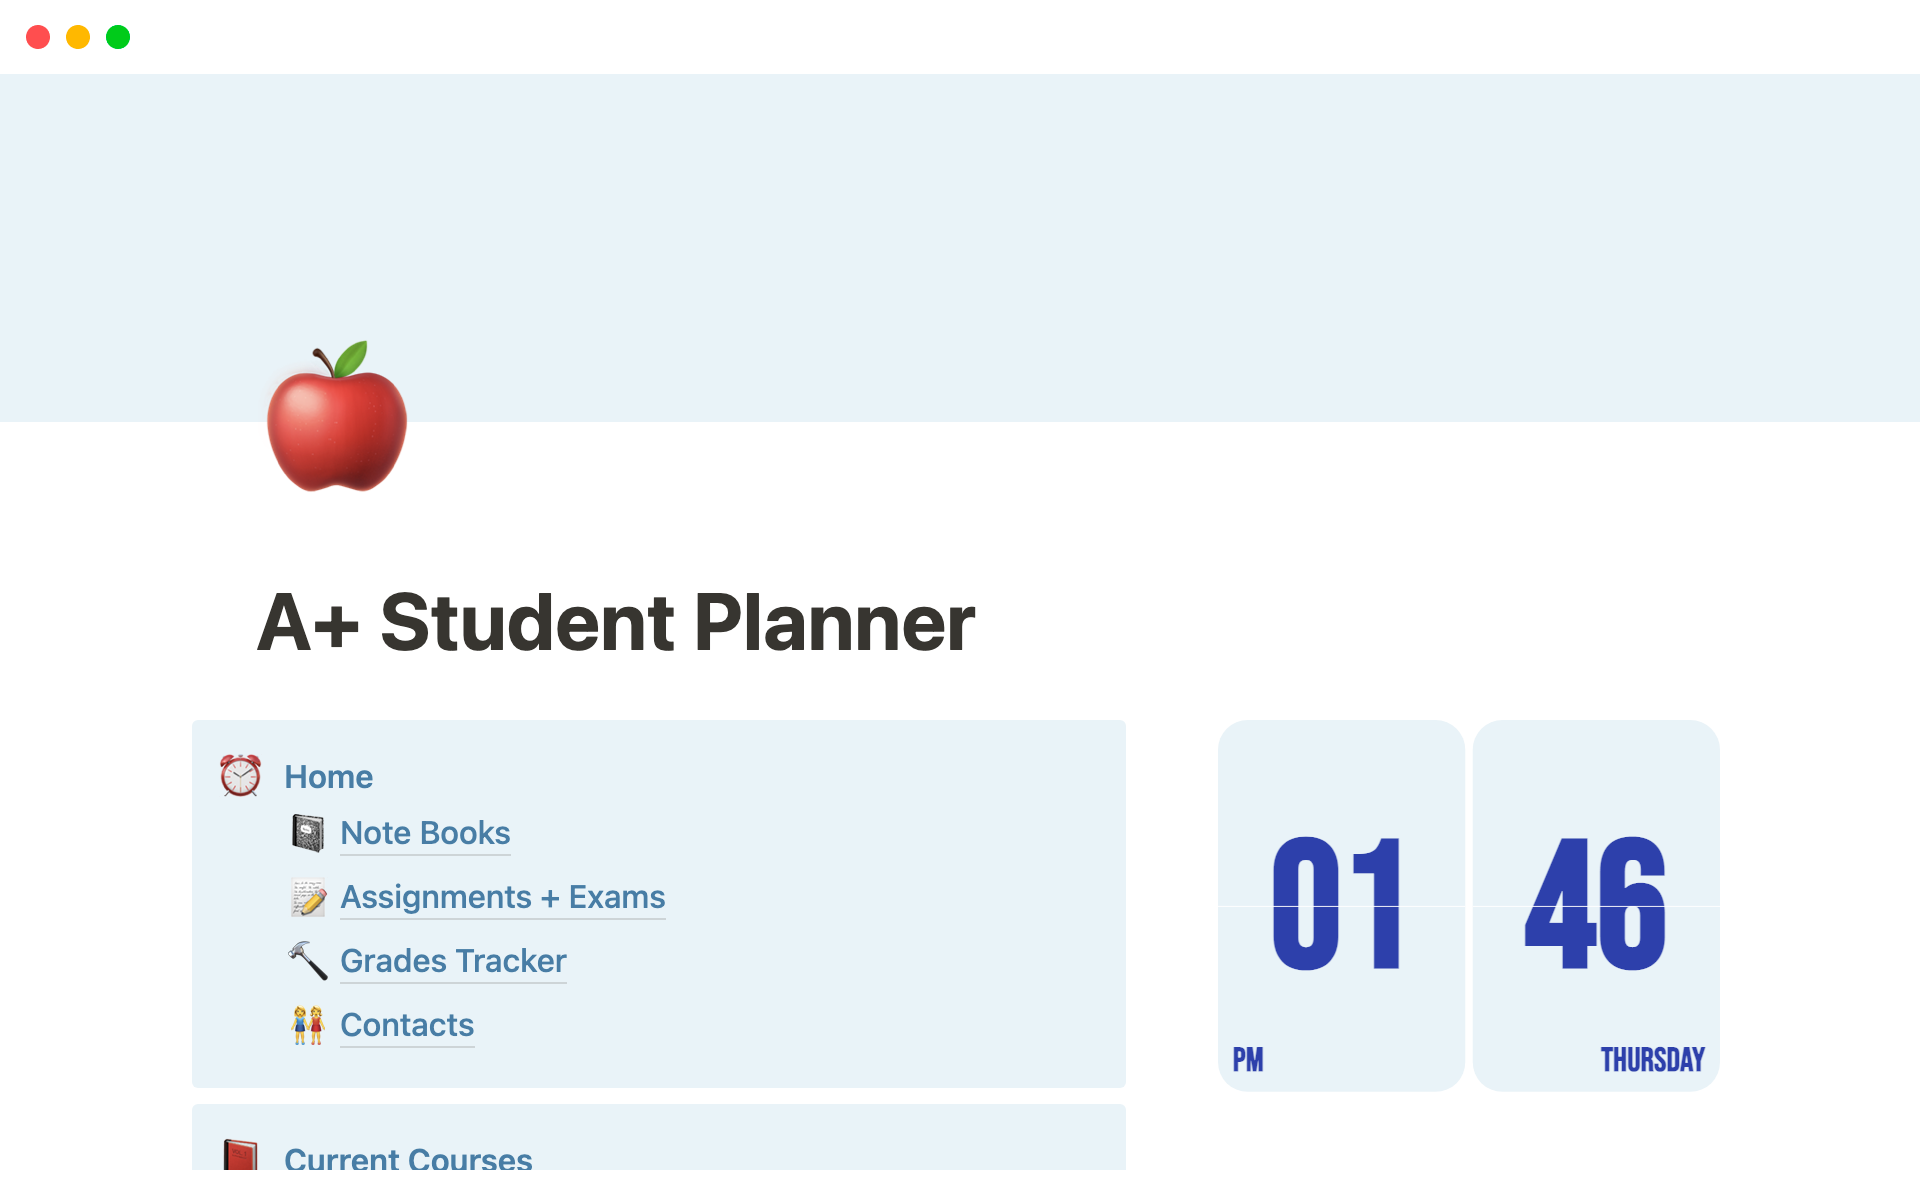 Vista previa de una plantilla para A+ Student Planner